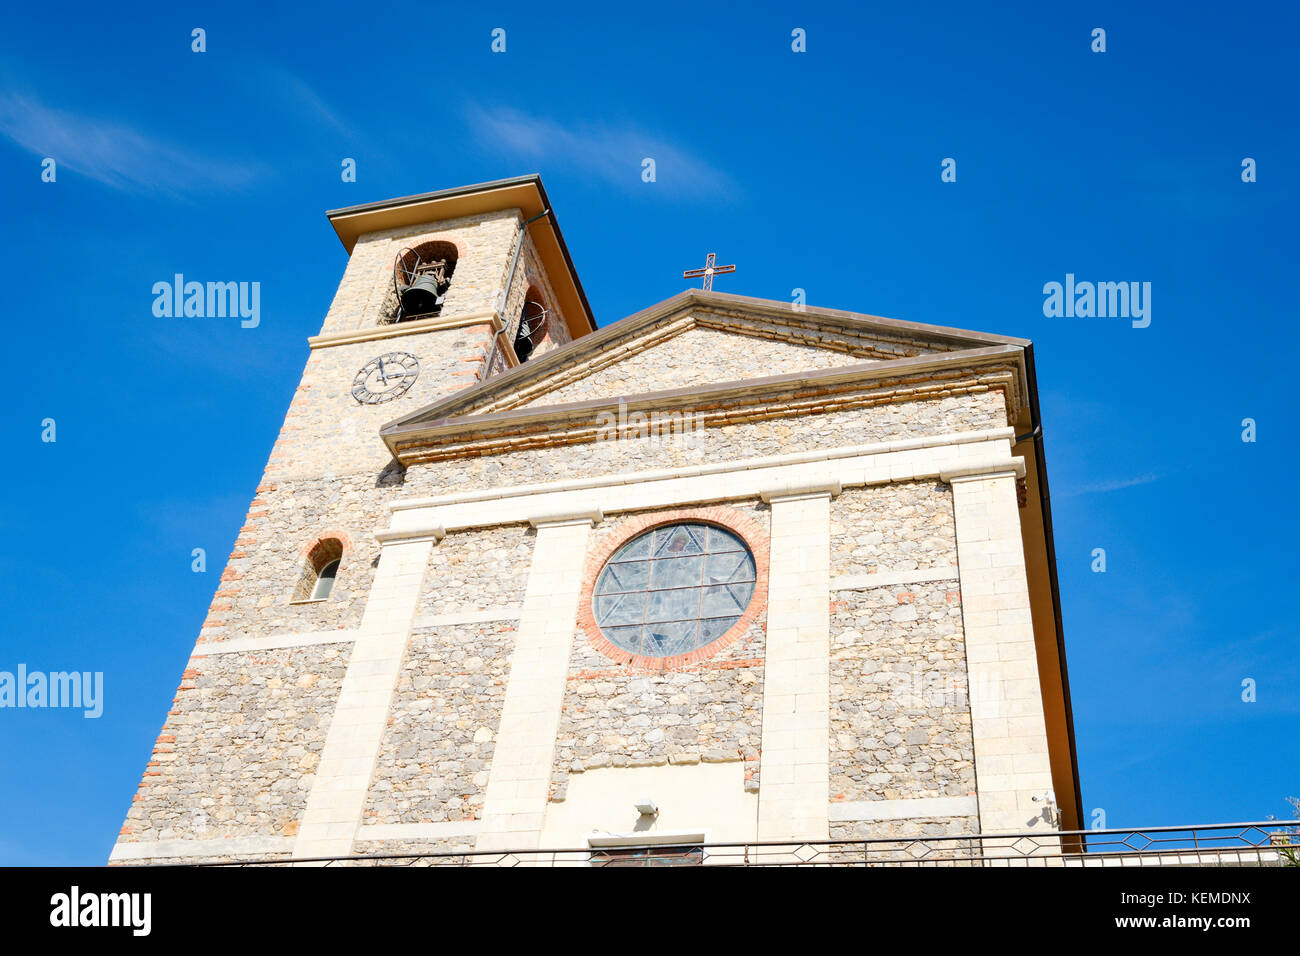 La iglesia de stella maris fotografías e imágenes de alta resolución - Alamy